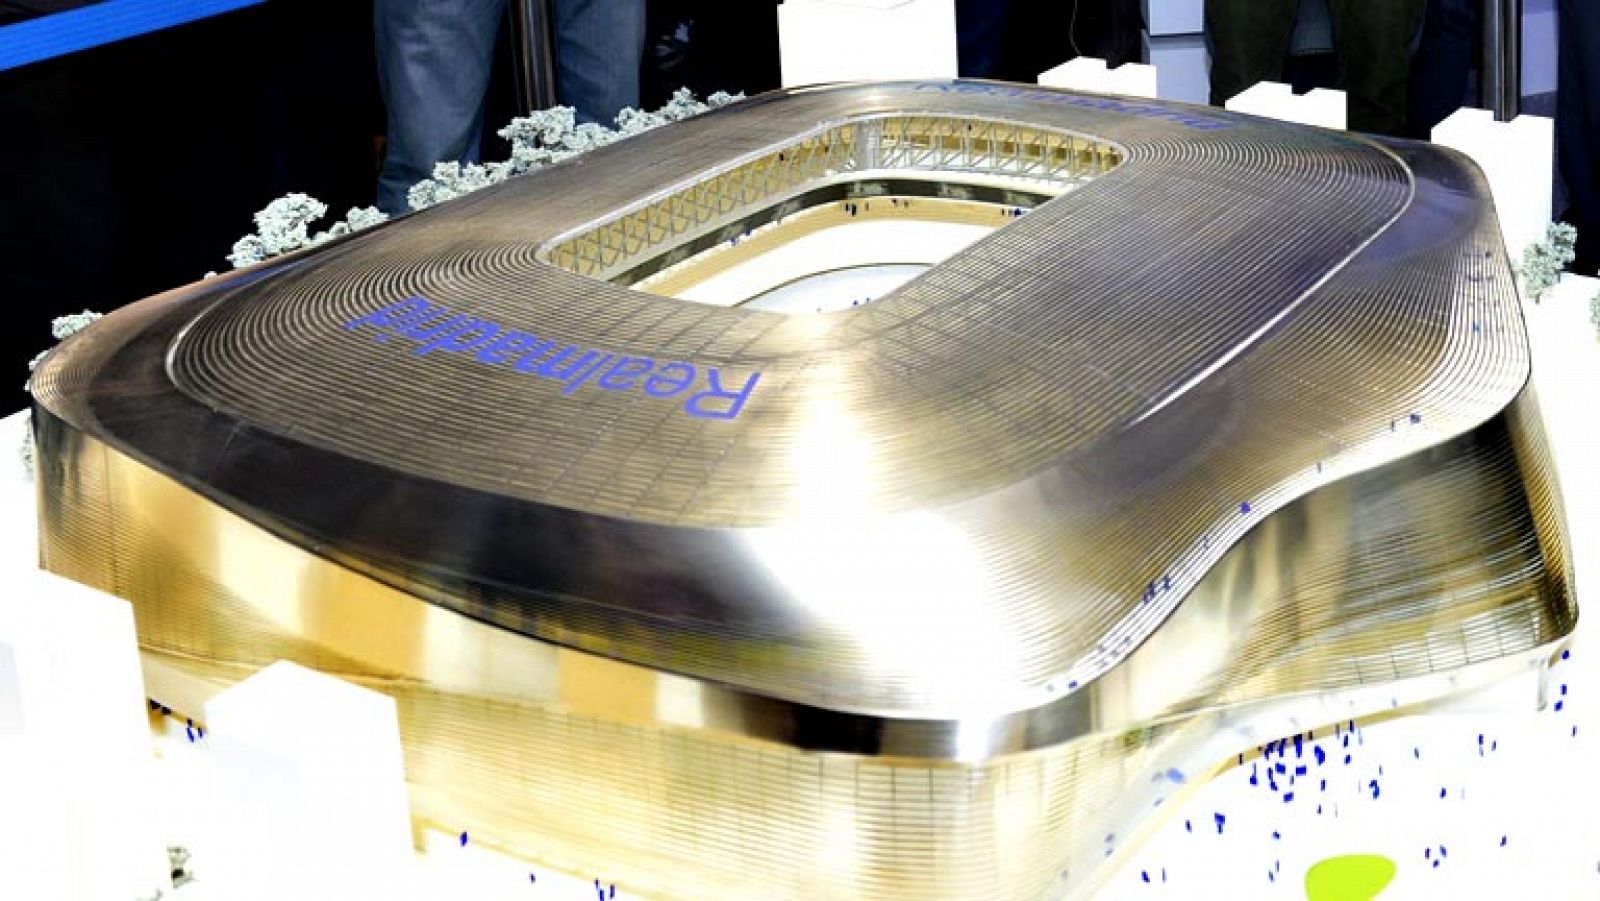 El proyecto presentado por GMP Architekten-L35-Ribas ha sido finalmente el elegido para la remodelación del estadio Santiago Bernabéu según ha anunciado hoy el presidente del Real Madrid Florentino Pérez. El ganador se impuso, después de un proceso d